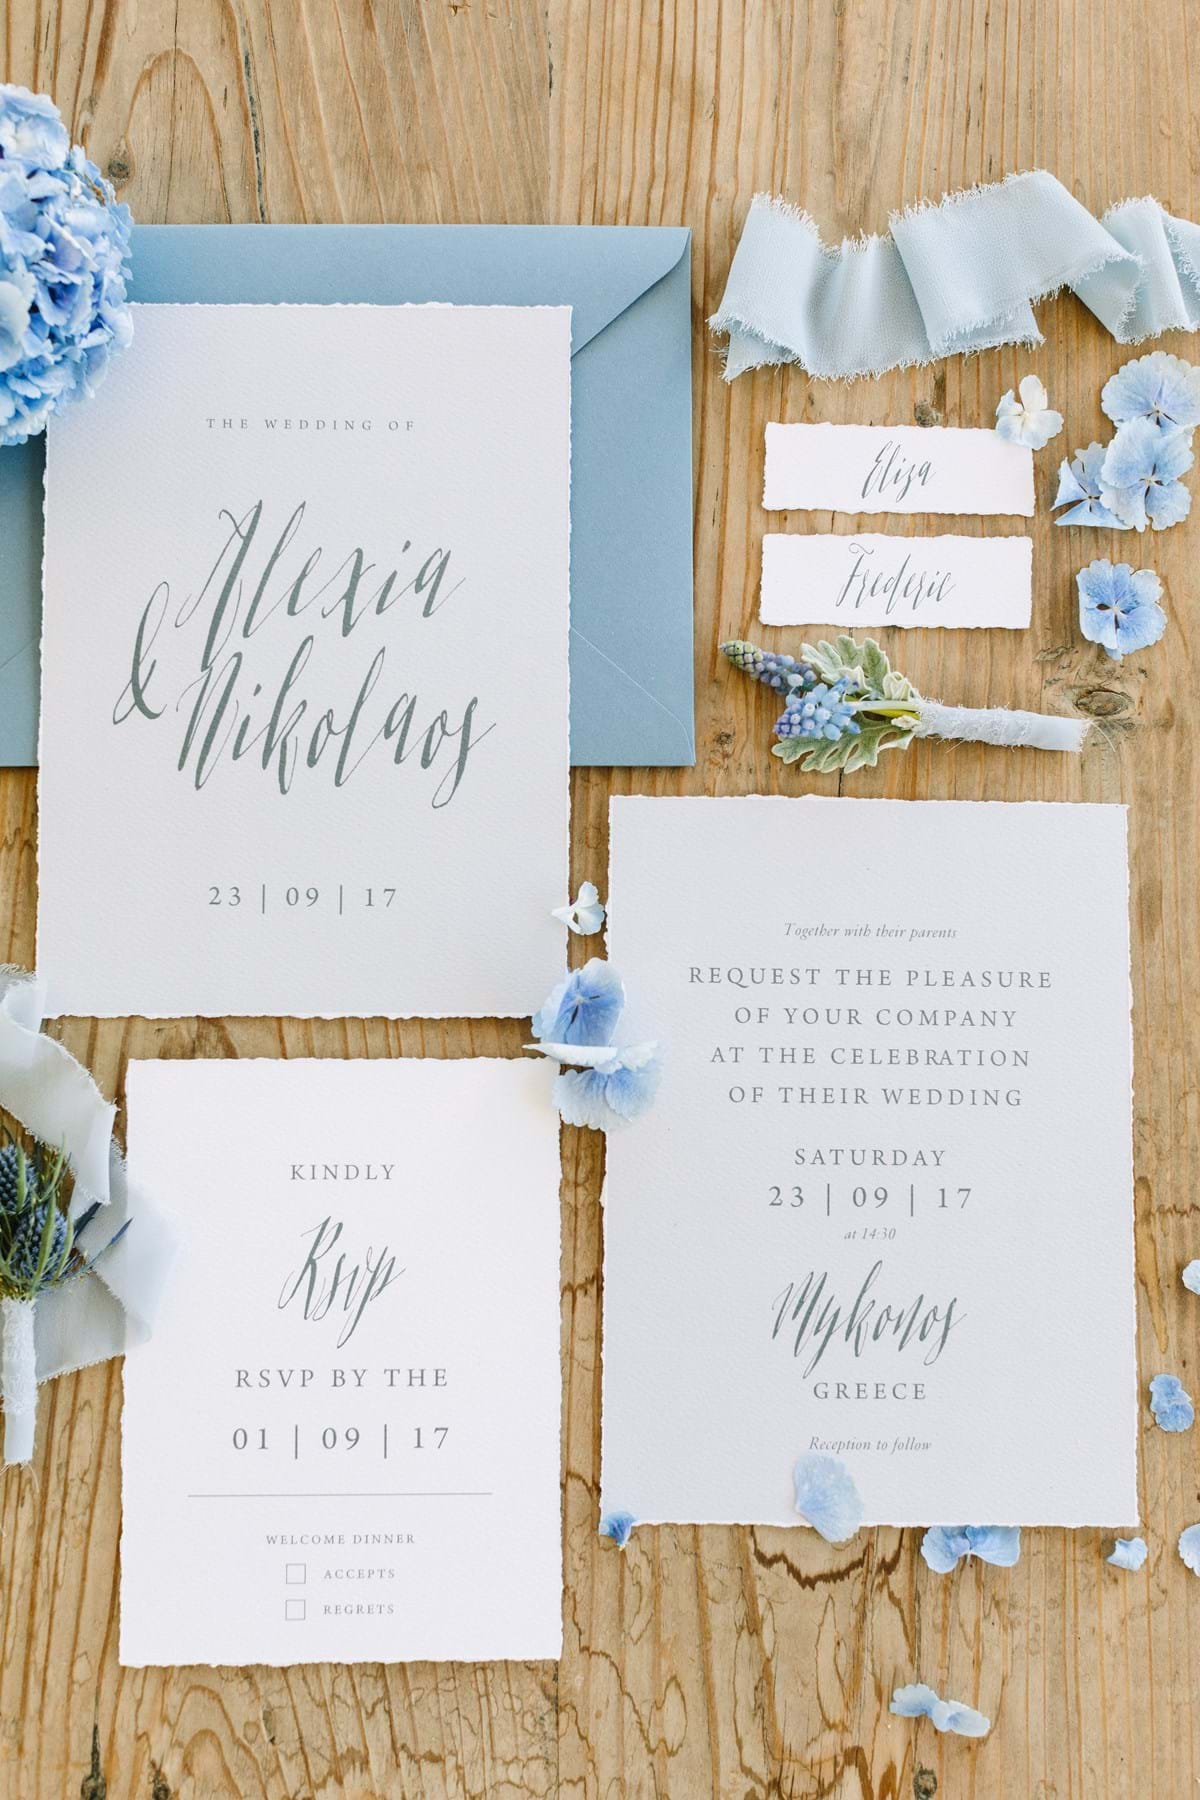 Unique Bohemian-Chic Destination Wedding Invitation & Stationery in Dusty Blue for a Mykonos Island Beach Wedding